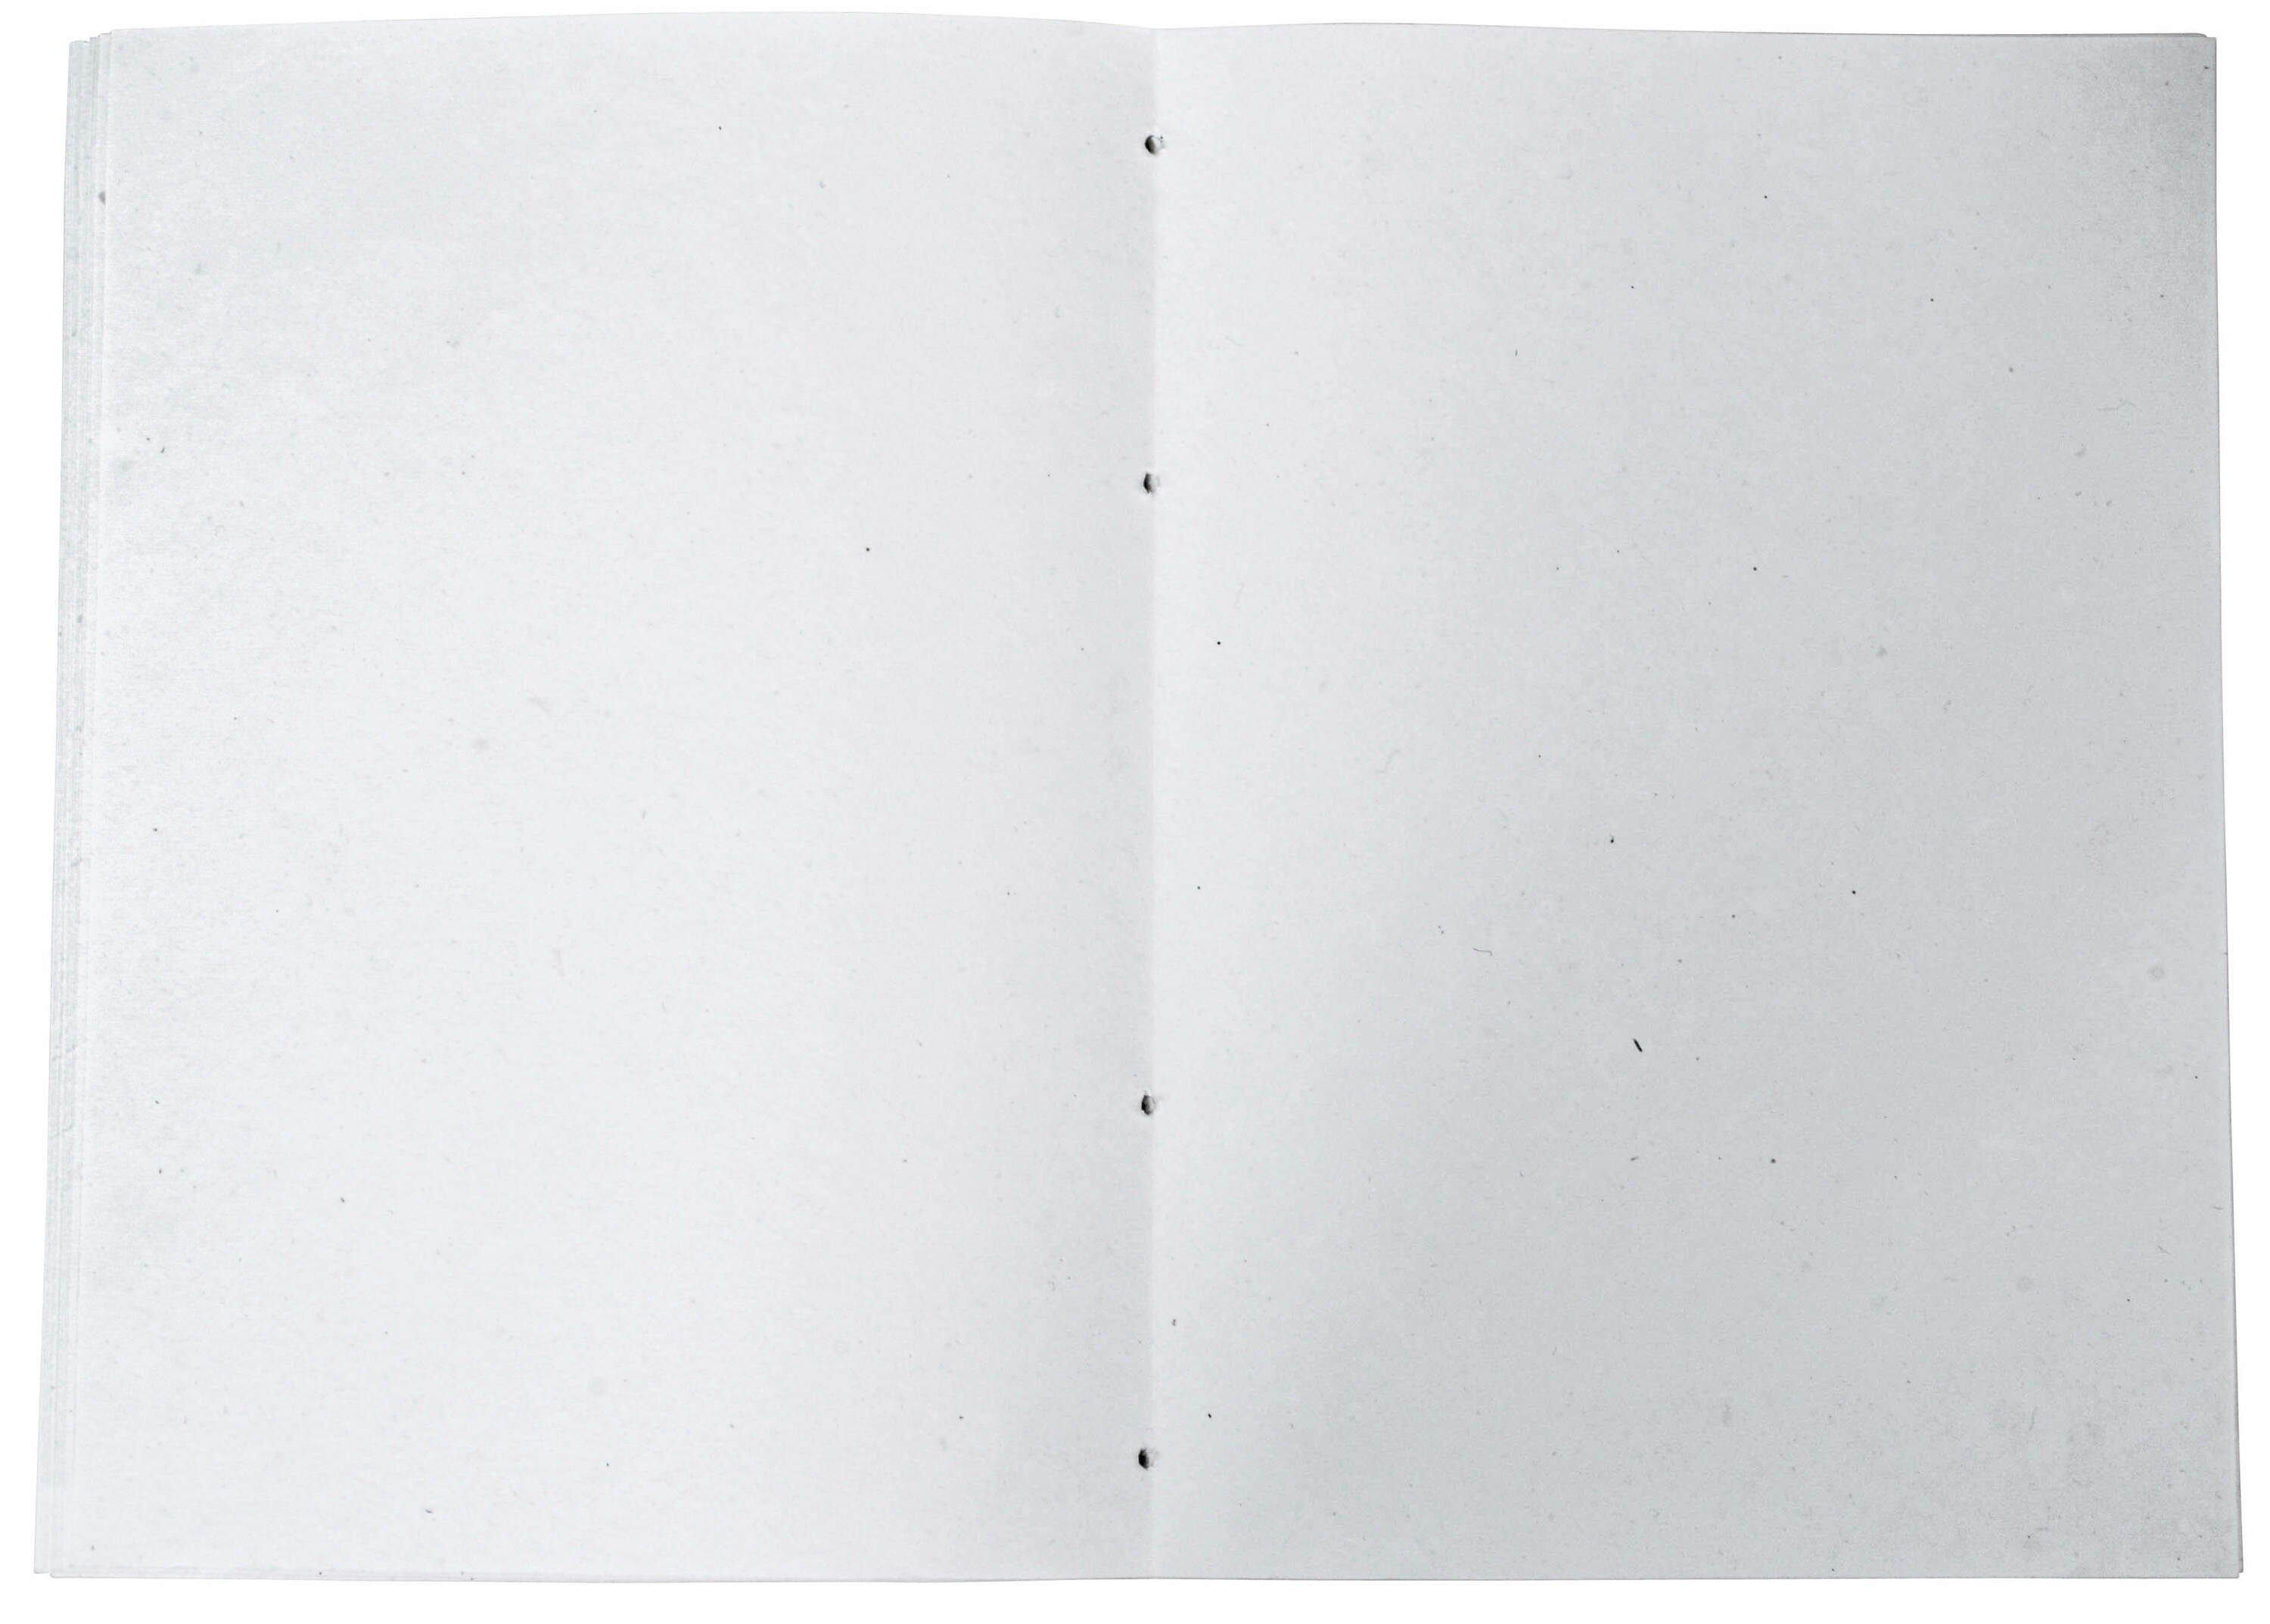 Set Papier Leder Blanko Naturpapier Gusti Bucheinlage B6 5er DIN-A4 -Inlay Naturpapier Briefpapier Asterix,